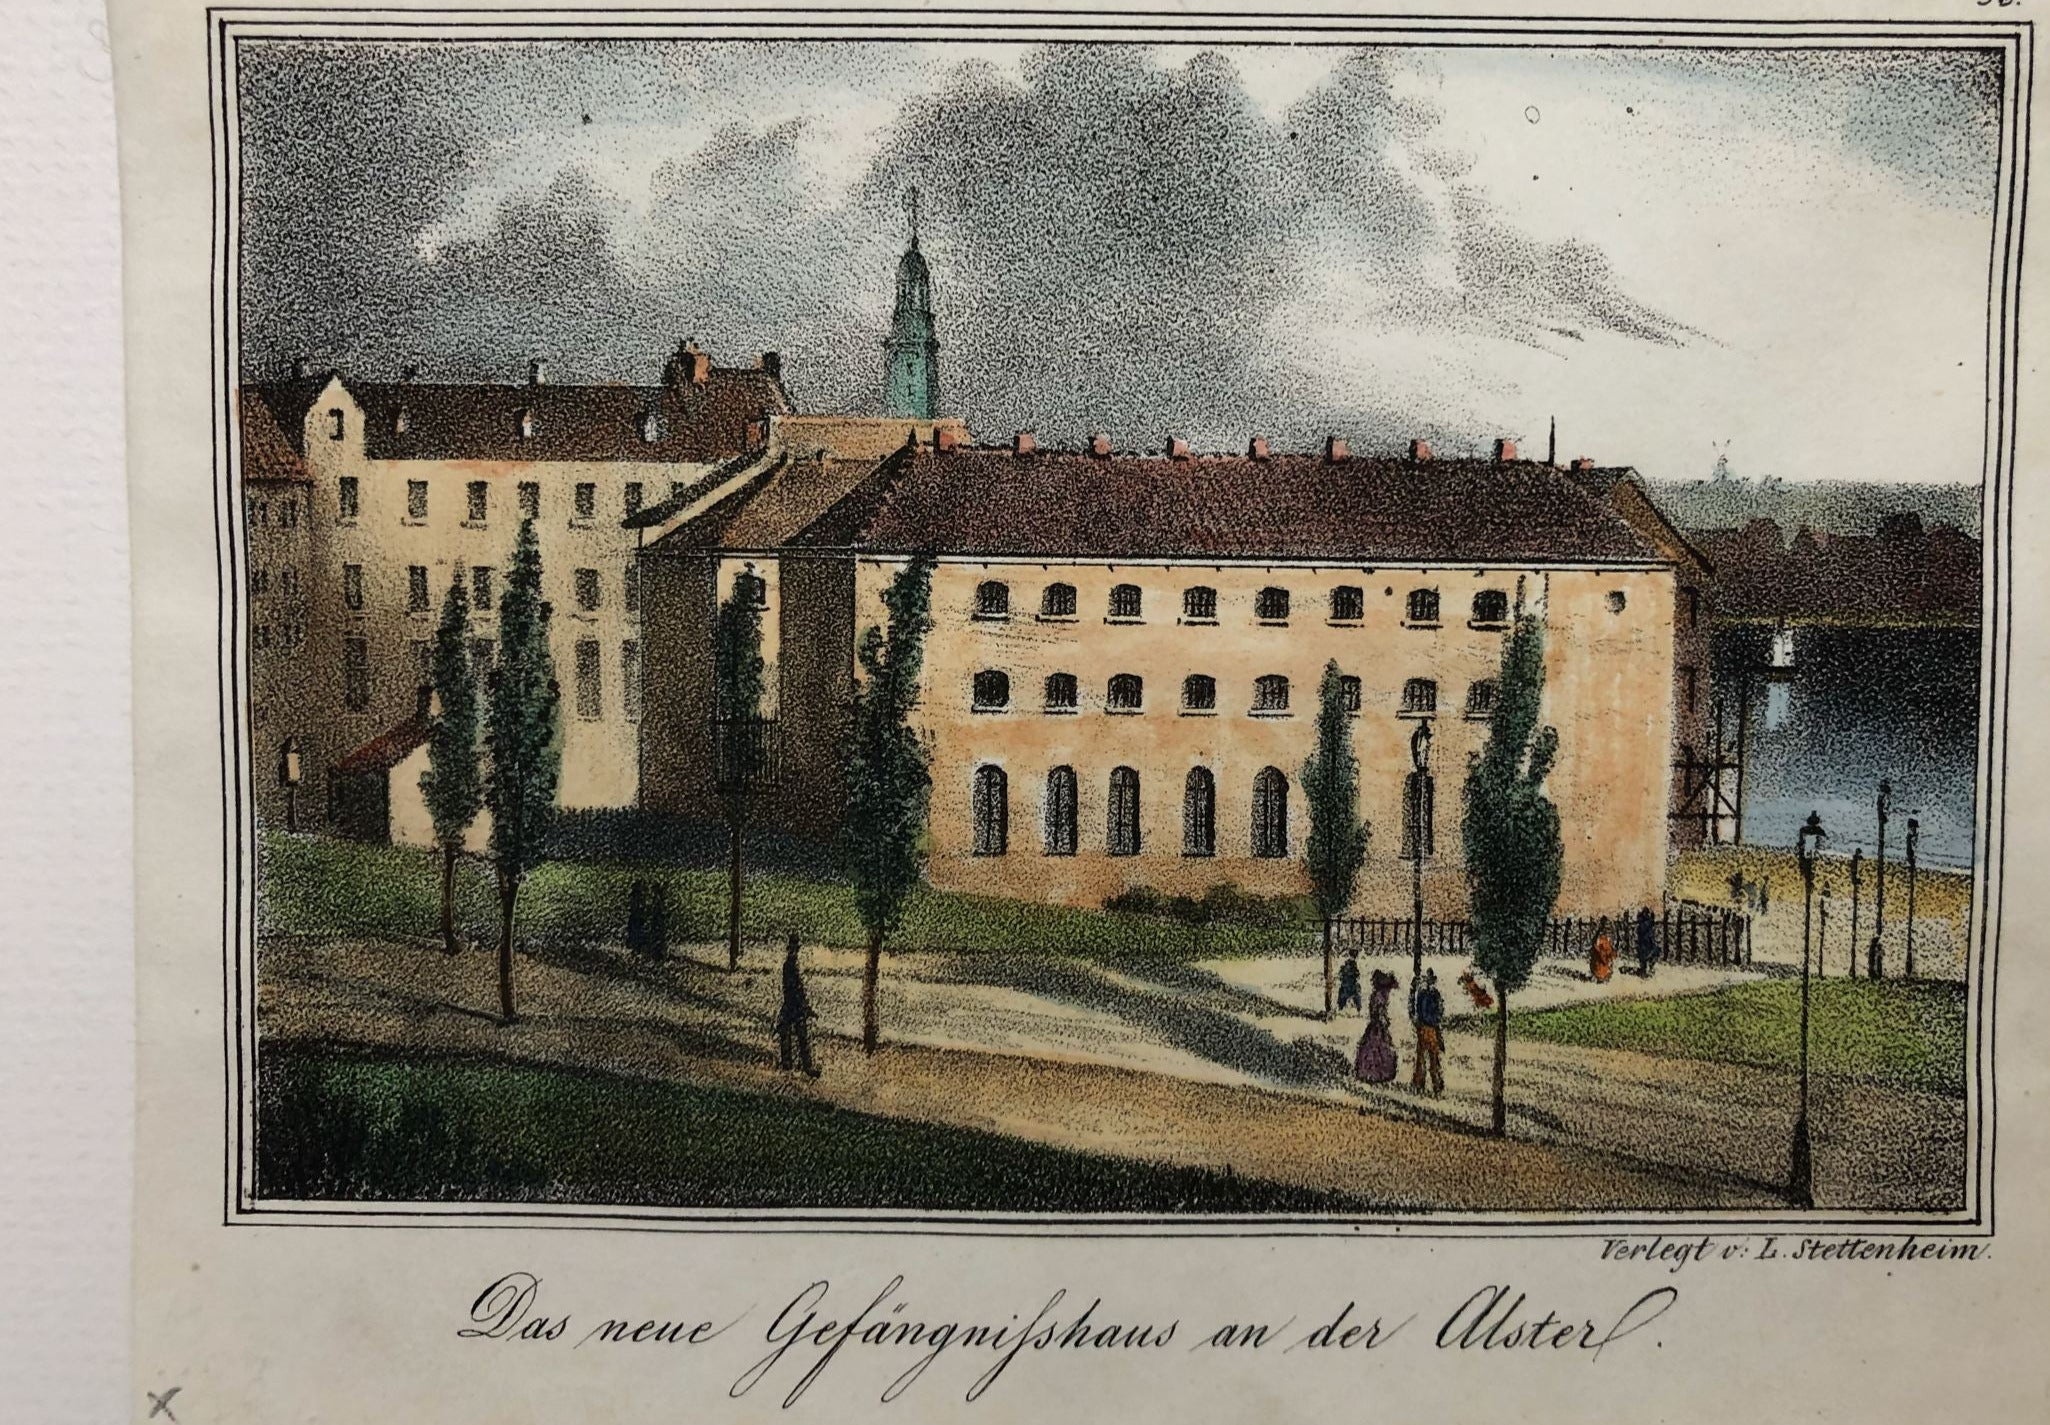 Ansicht vom Hamburger Gefängnishaus an der Alster um das Jahr 1845 vom Verlag Levin Stettenheim